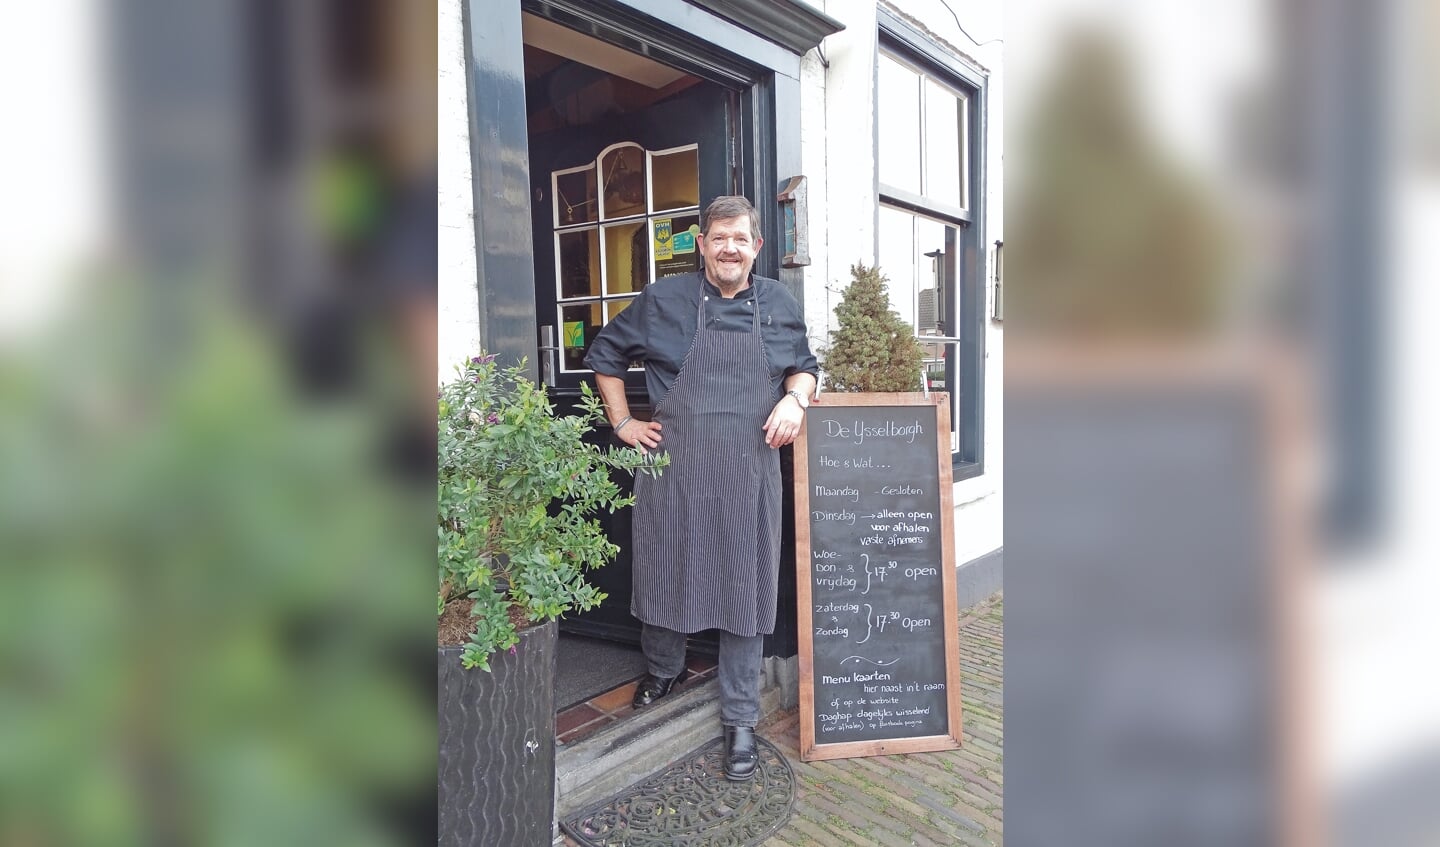 Henk opent de deur van Restaurant de IJsselborgh.